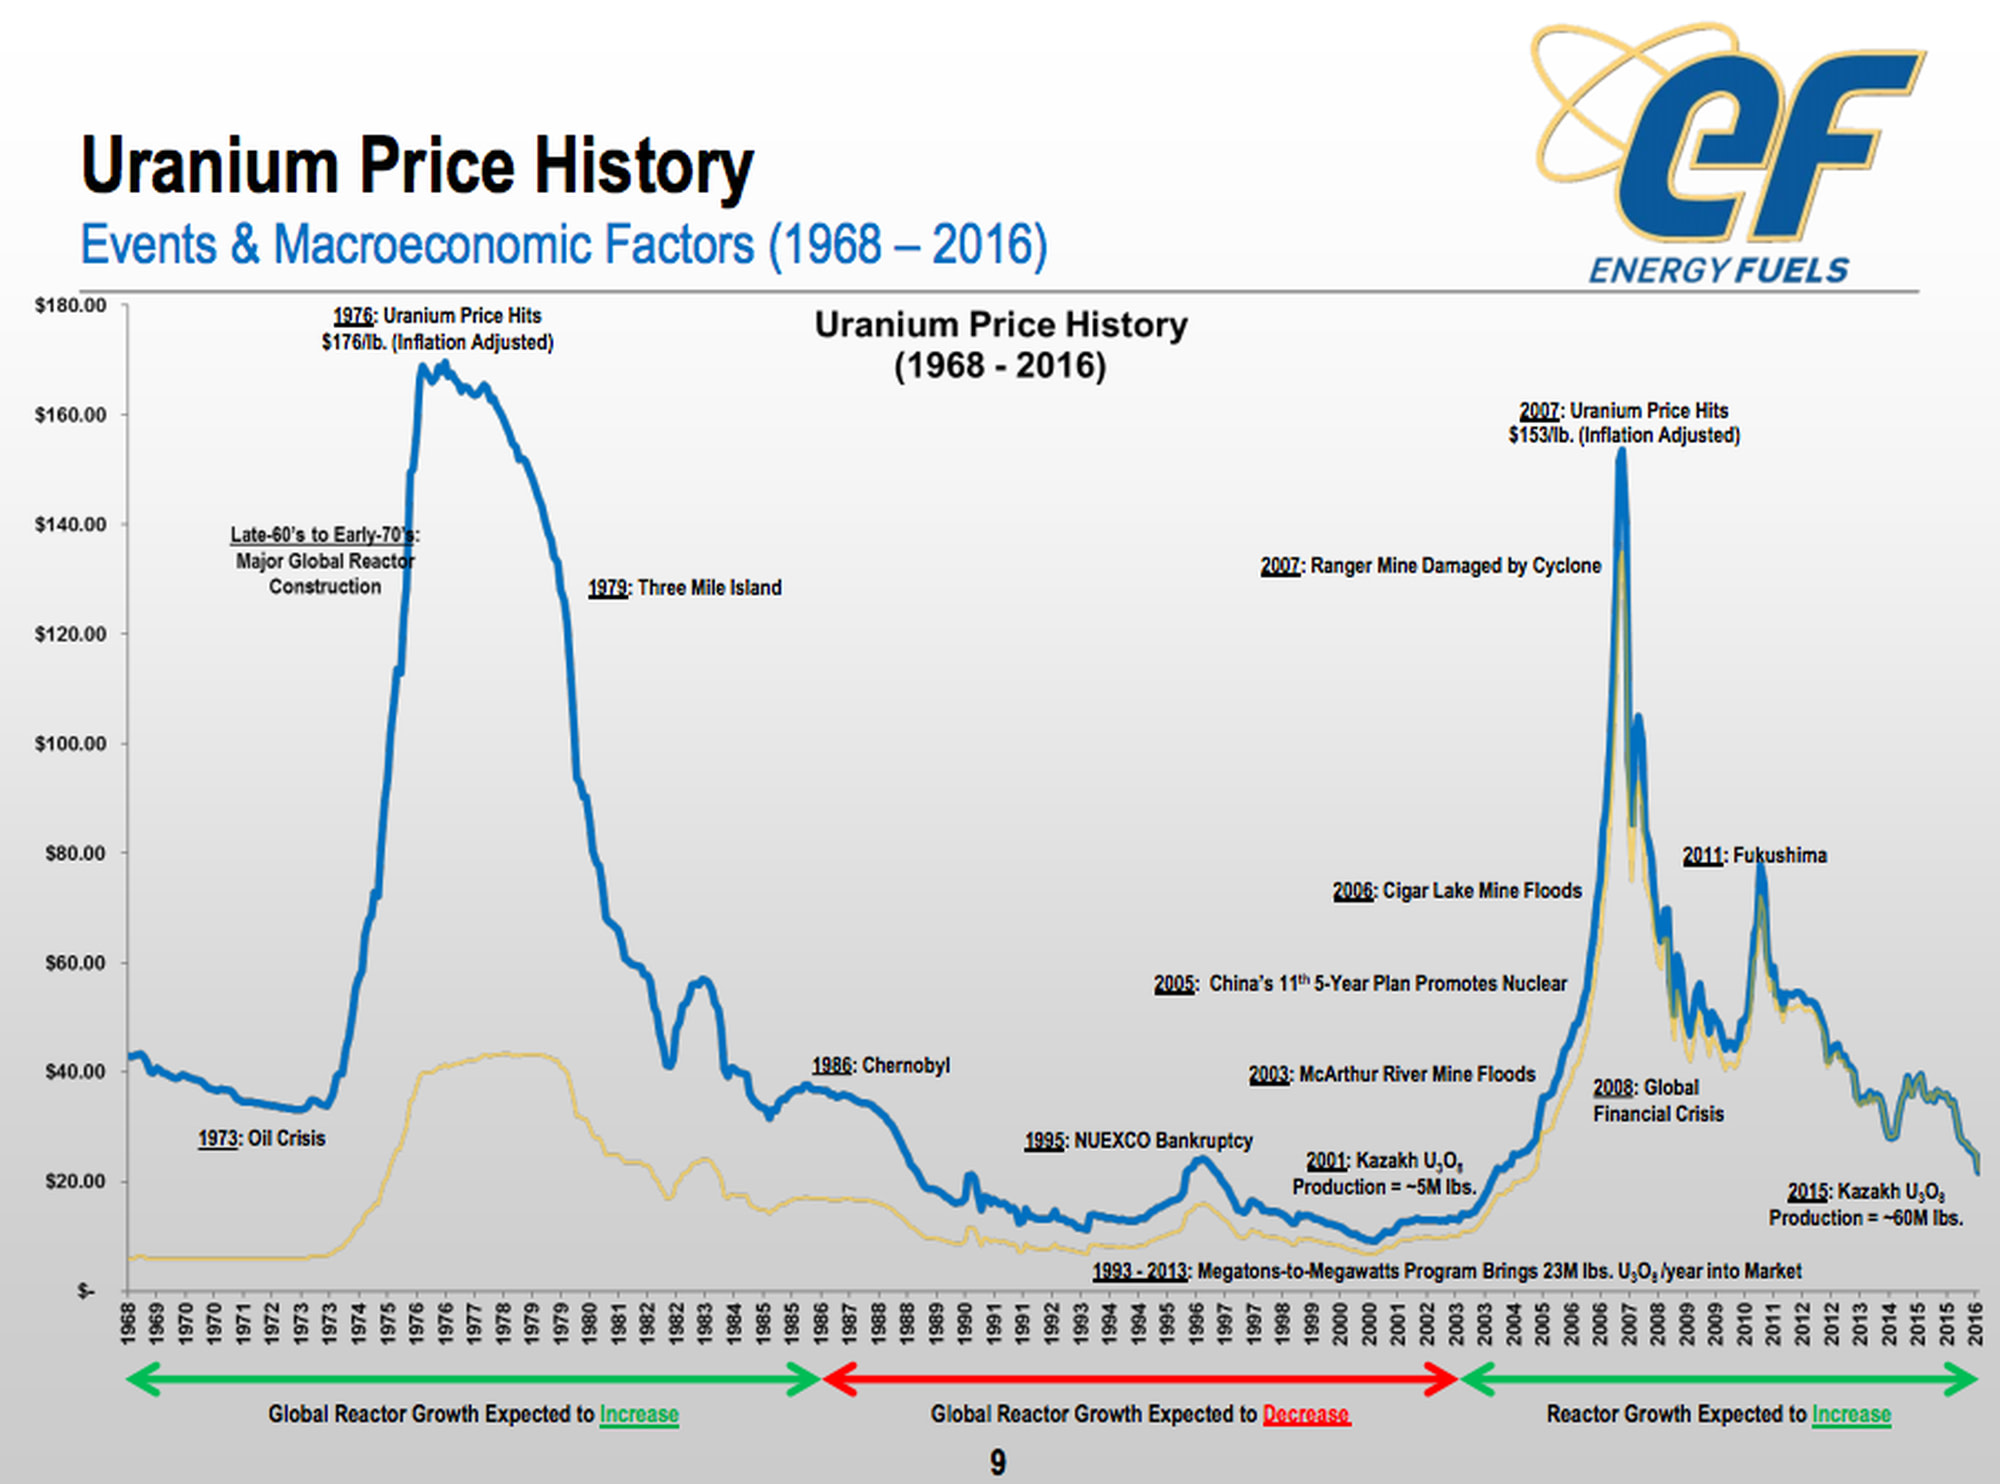 Uranium Price History - Events & Macroeconomic Factors (1968 - 2016)